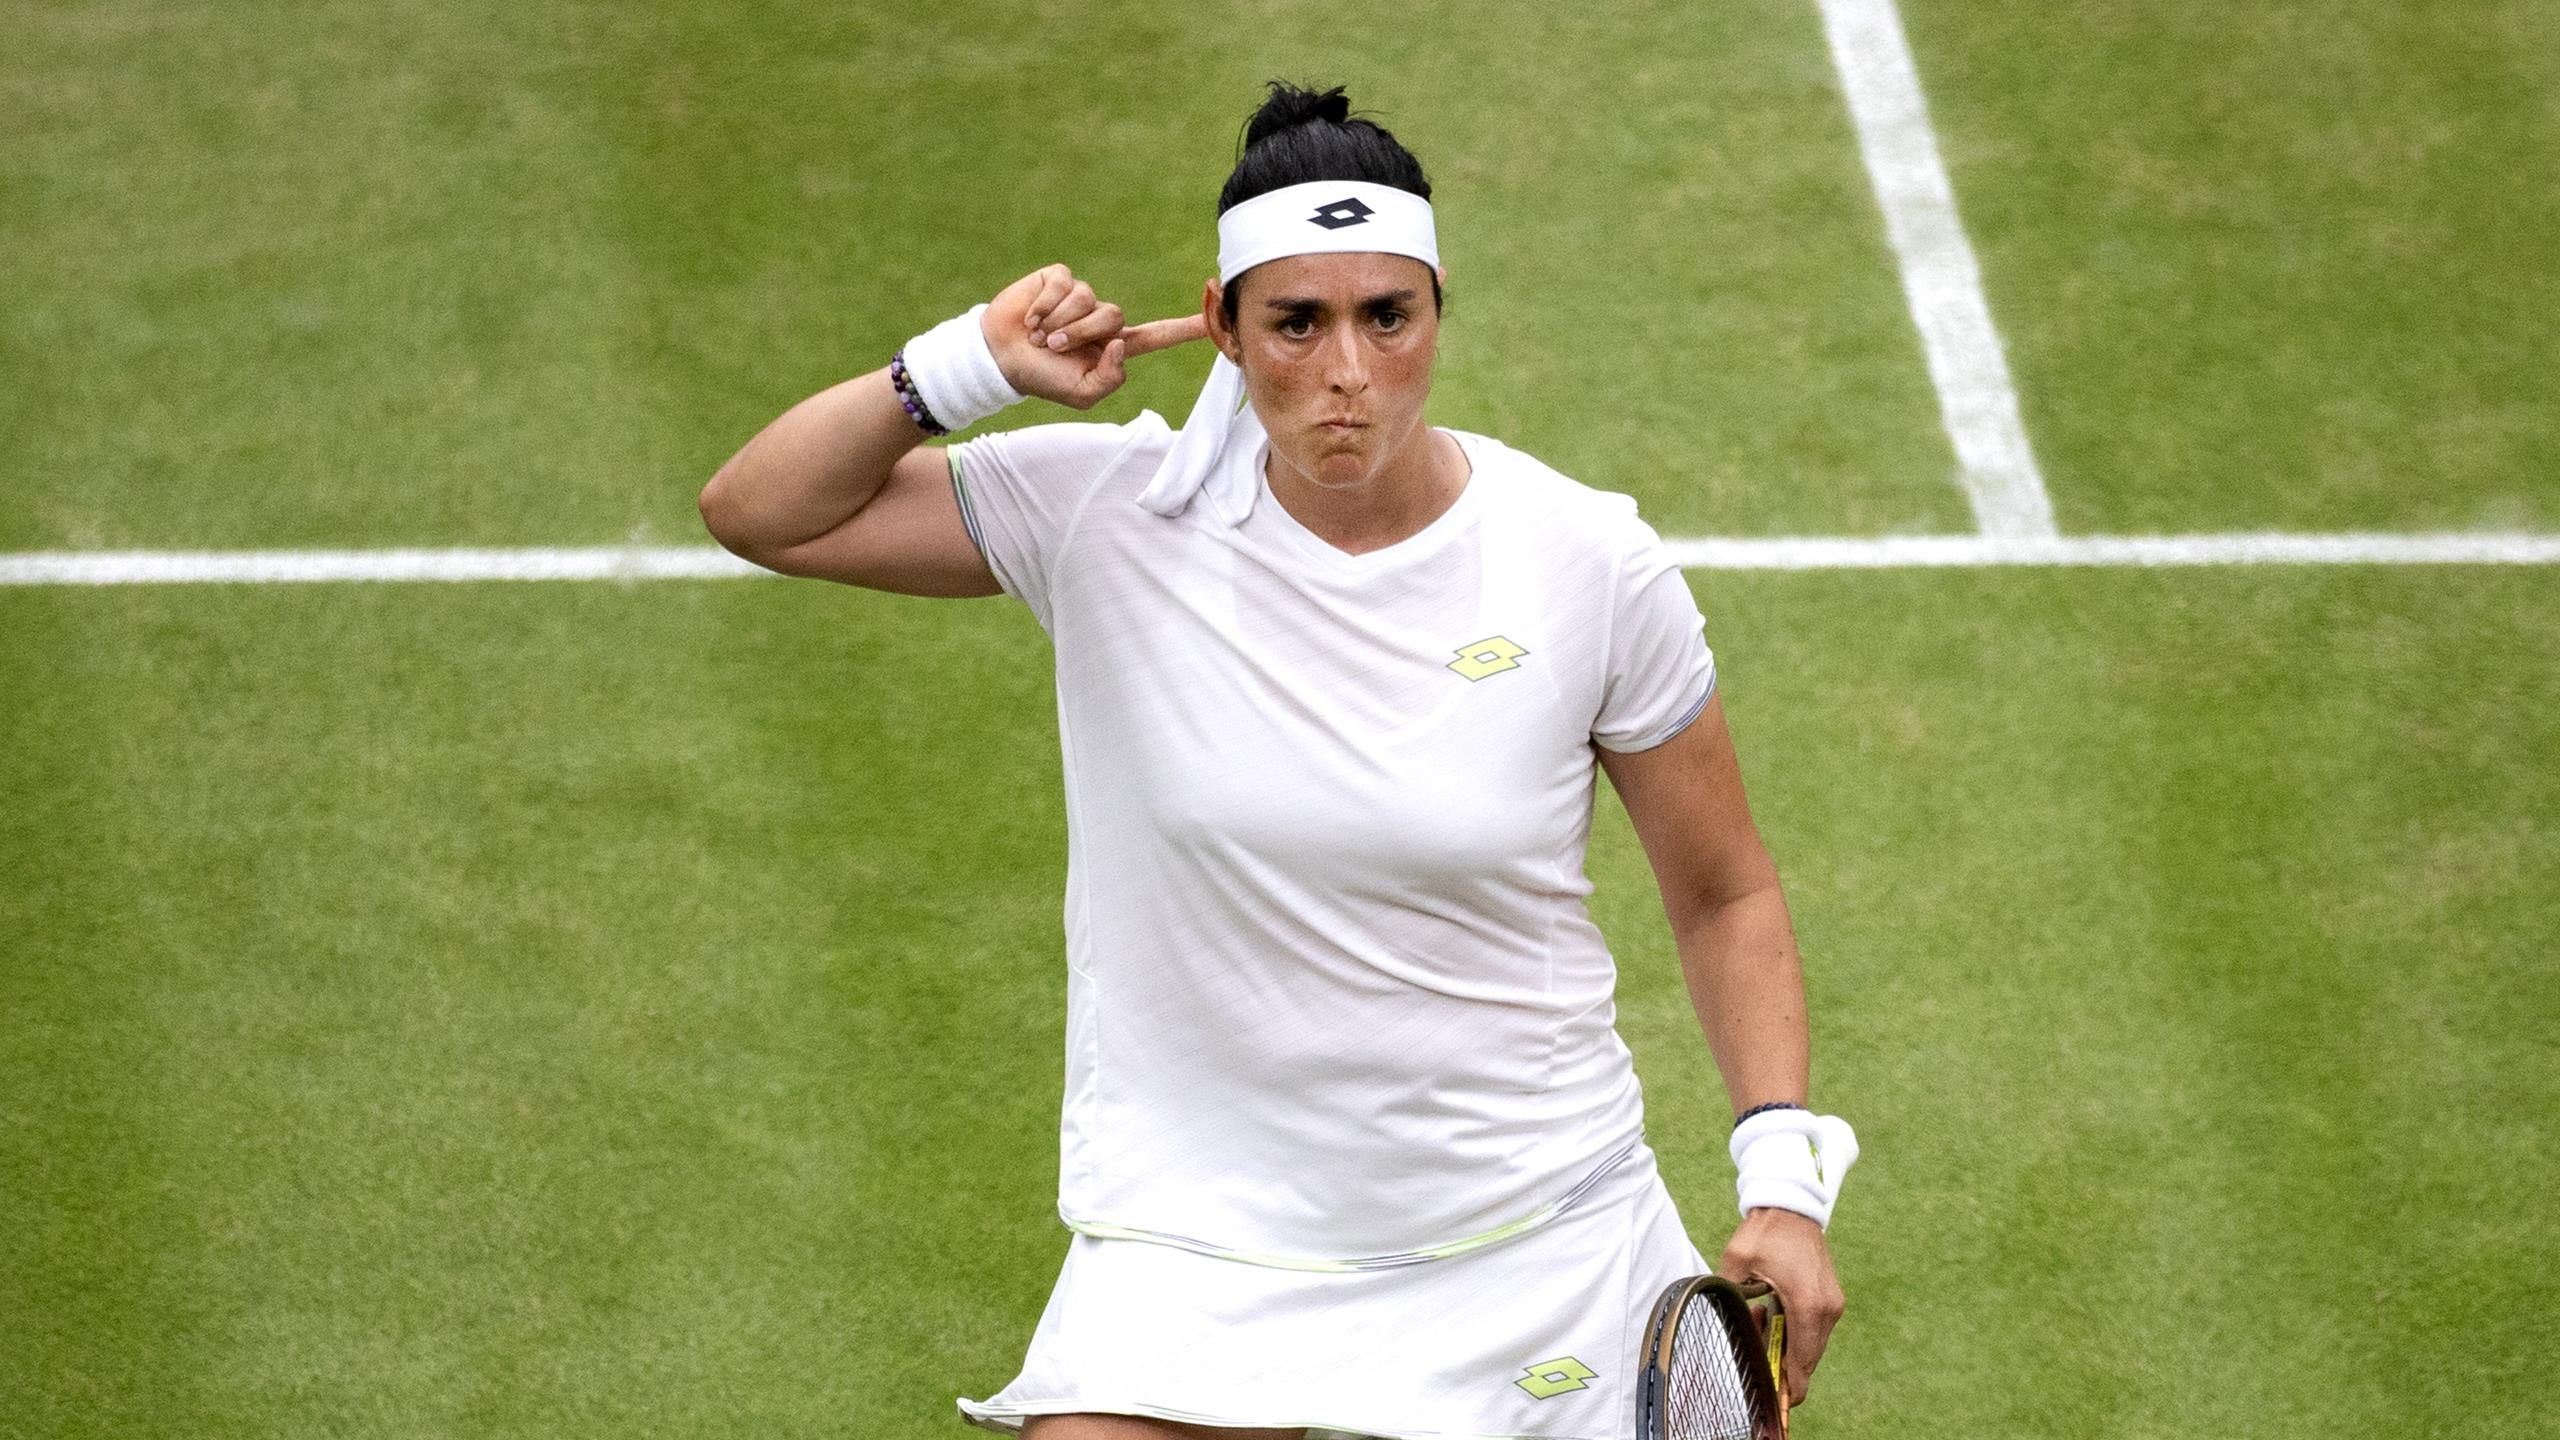 Wimbledon Ons Jabeur übt sich vor Final-Showdown in Geduld - Tunesierin greift nach historischem Titel